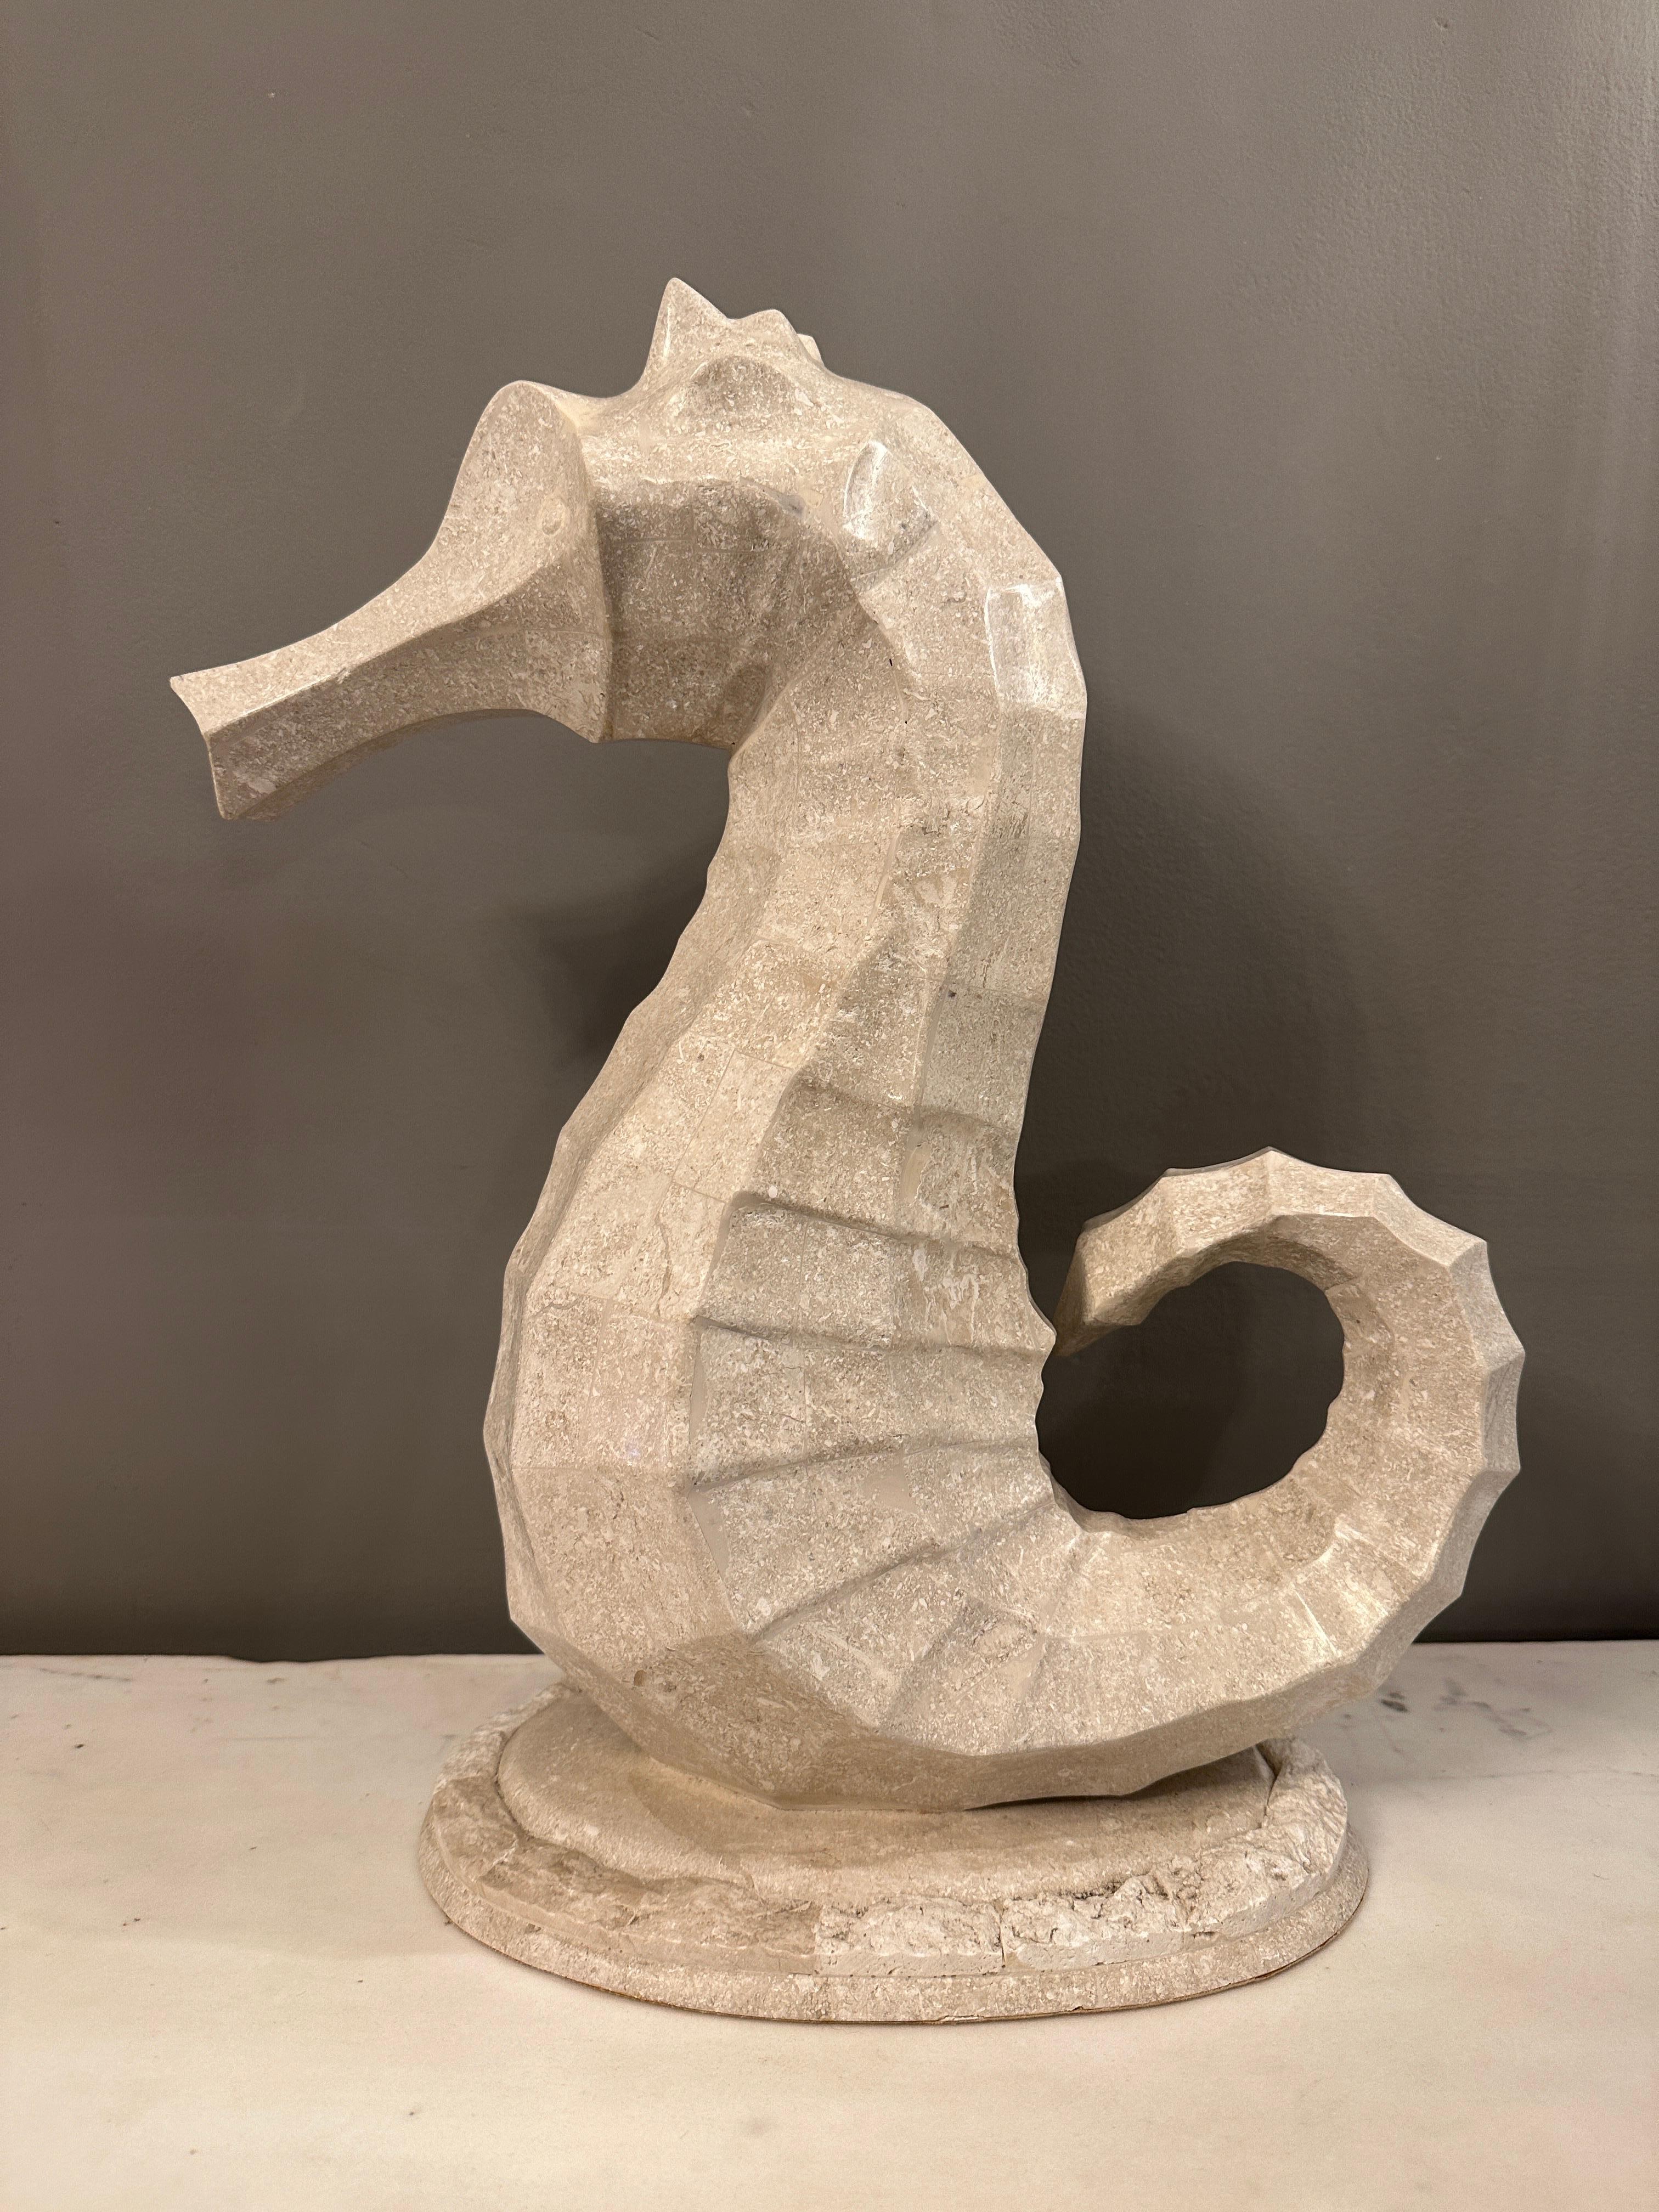 Sehr dekorative Seepferdchen-Skulptur aus Marmor von Maitland Smith, USA, mit Mosaik. Ungewöhnlich und in einem cremefarbenen Marmor mit Marmor und Stein beendet montieren.